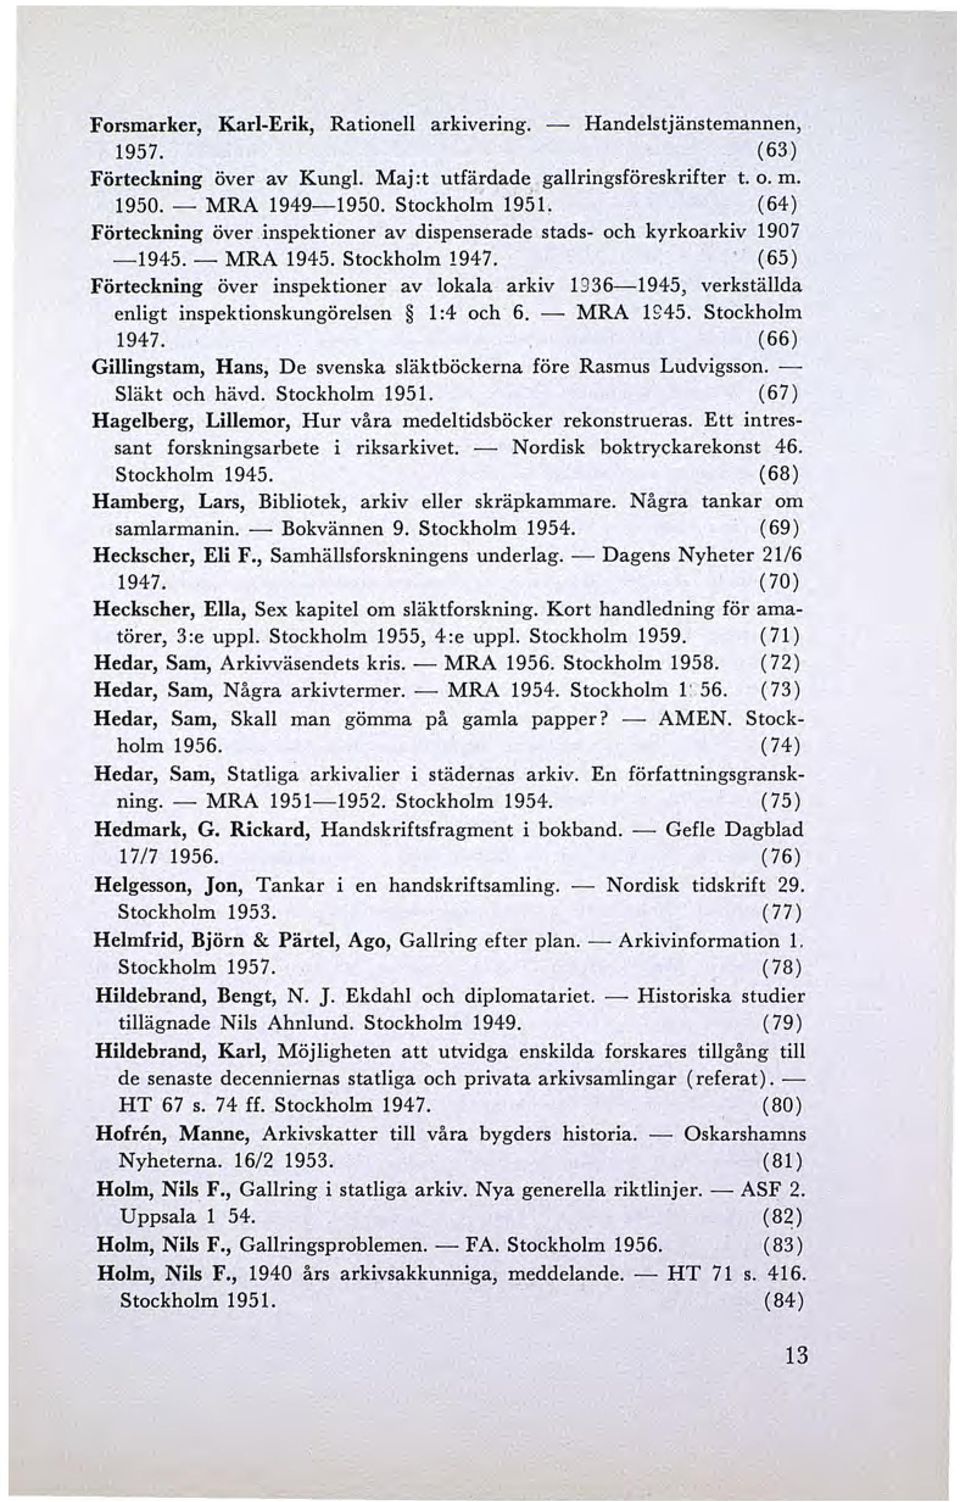 (65) Förteckning över inspektioner av lokala arkiv 1936-1945, verkställda enligt inspektionskungörelsen 1:4 och 6. - MRA 1S45. Stockholm 1947.